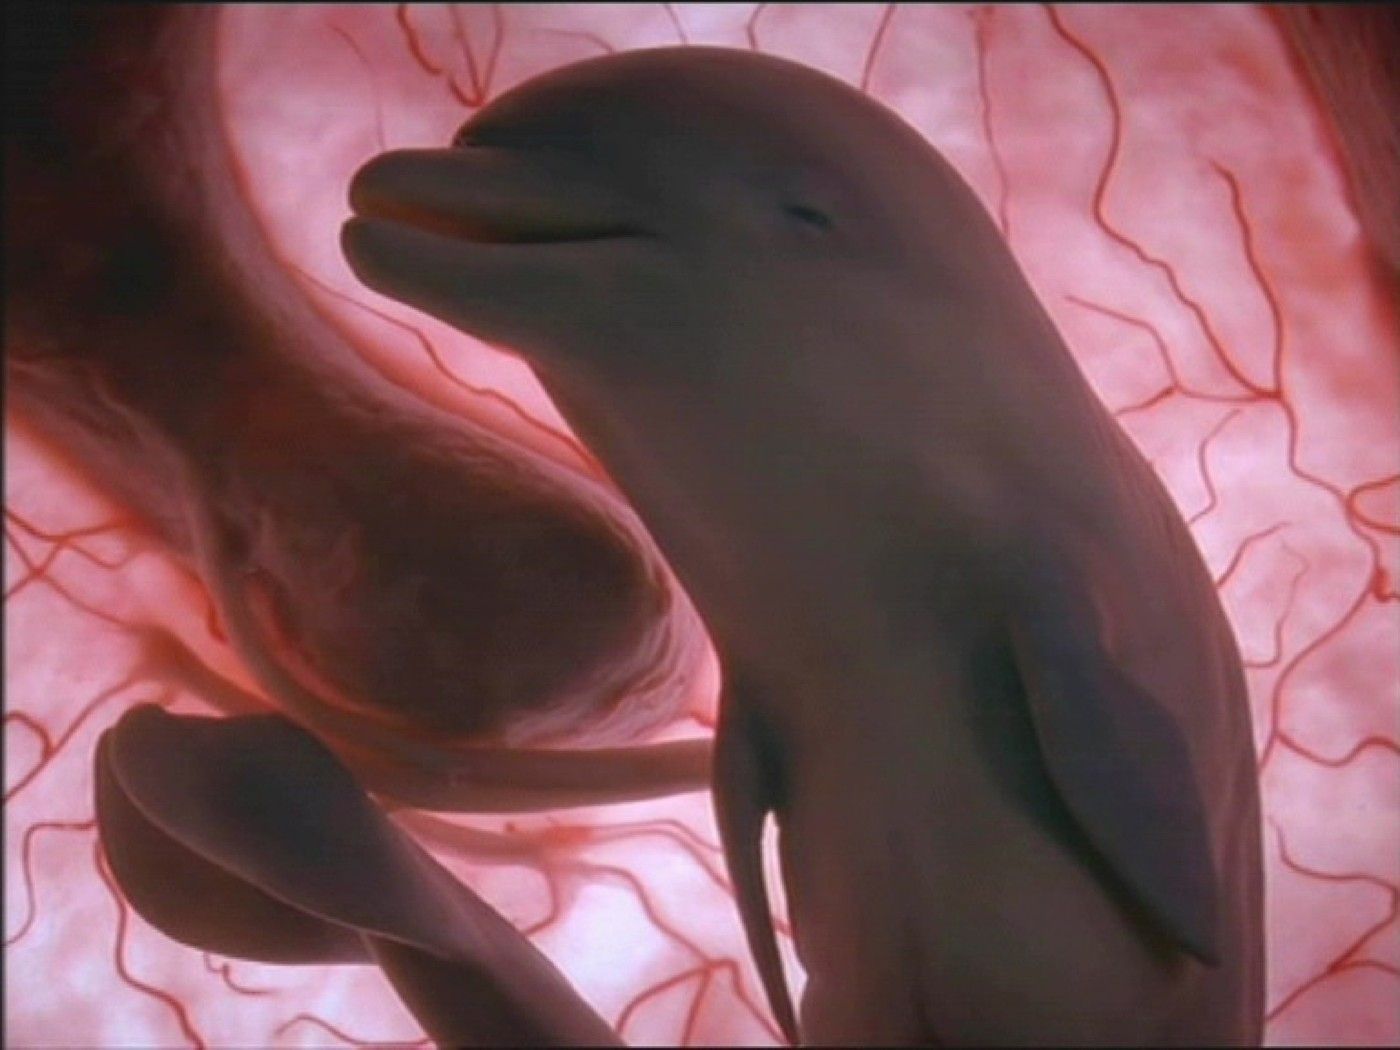 Fotografie nenarozených zvířat v děloze